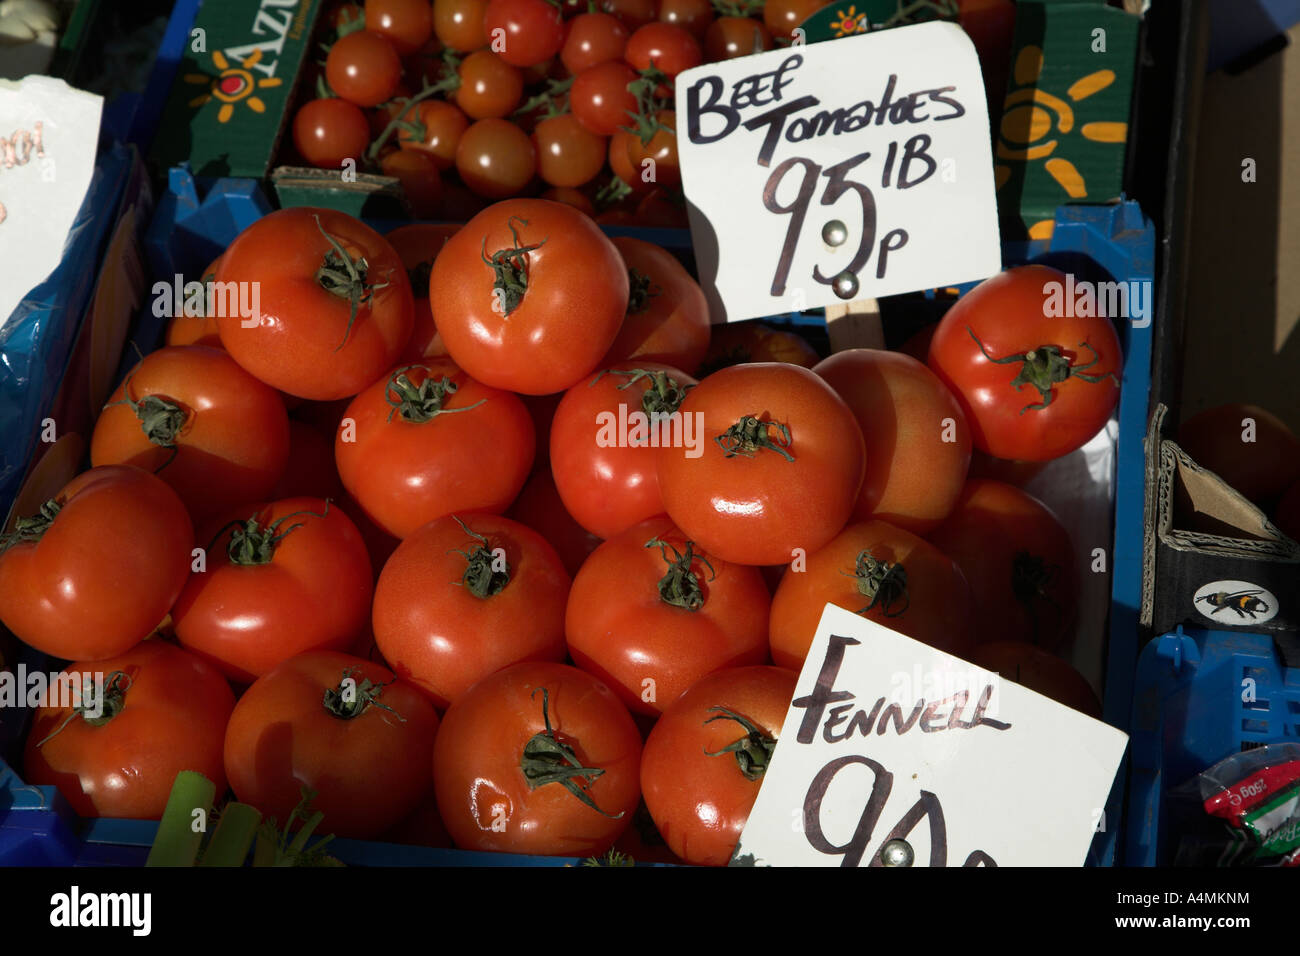 La carne de los tomates comercializados cotizaba con Reino Unido libras imperial Foto de stock